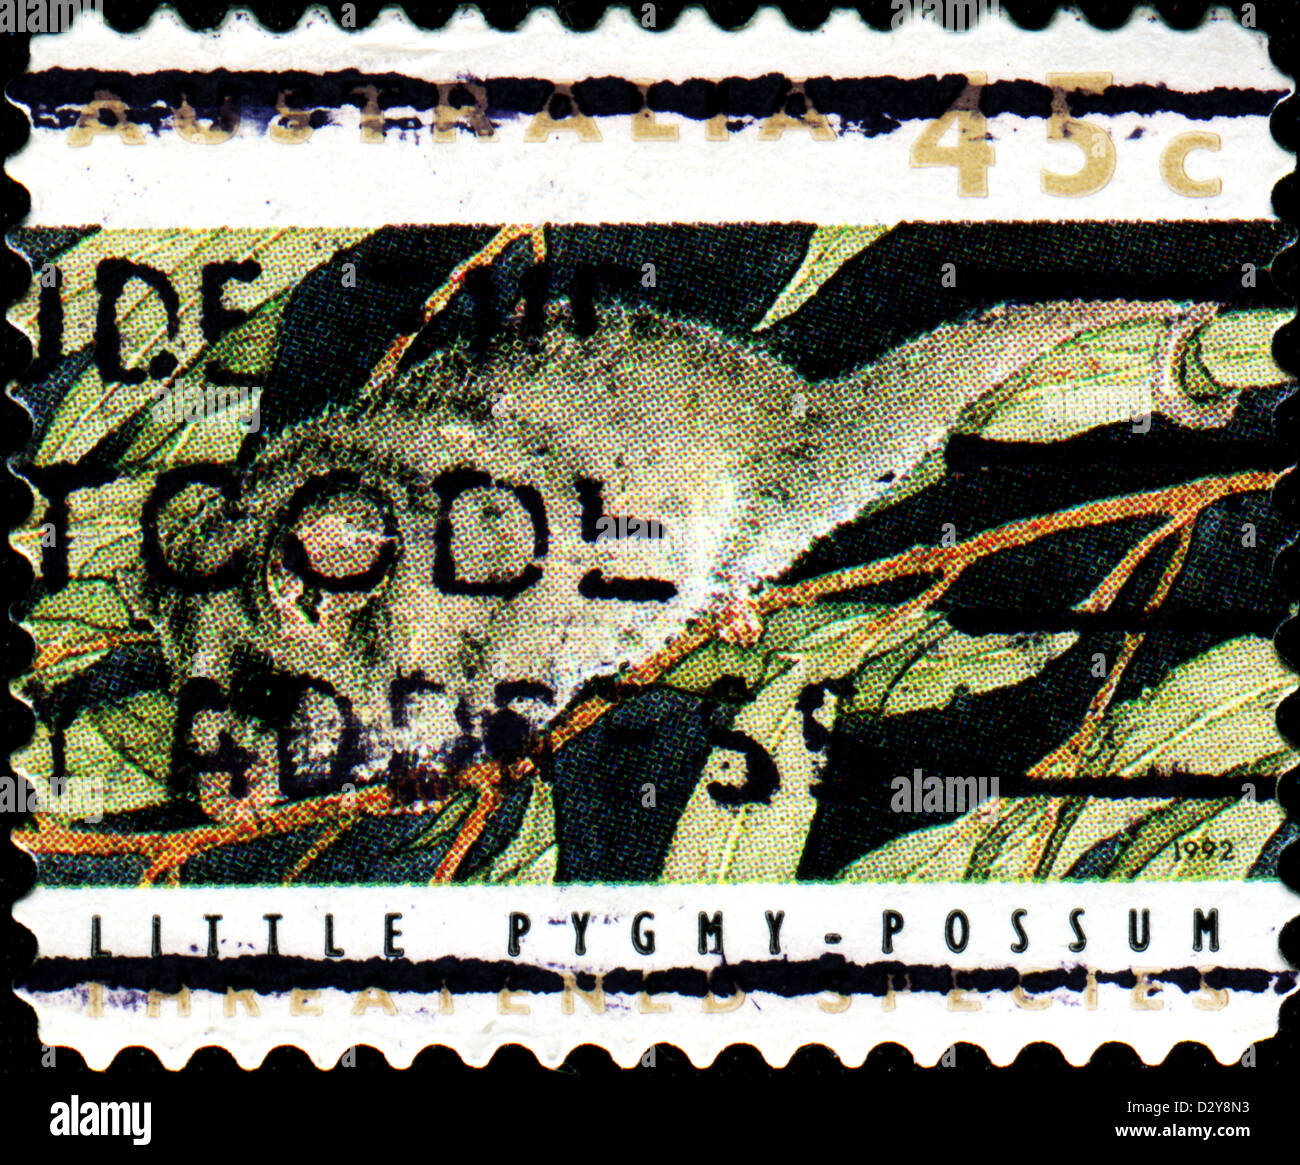 Australien - ca. 1992: Eine Briefmarke gedruckt in Australien zeigt wenig Pygmy Opossum, gefährdeter Arten-Serie, ca. 1992 Stockfoto